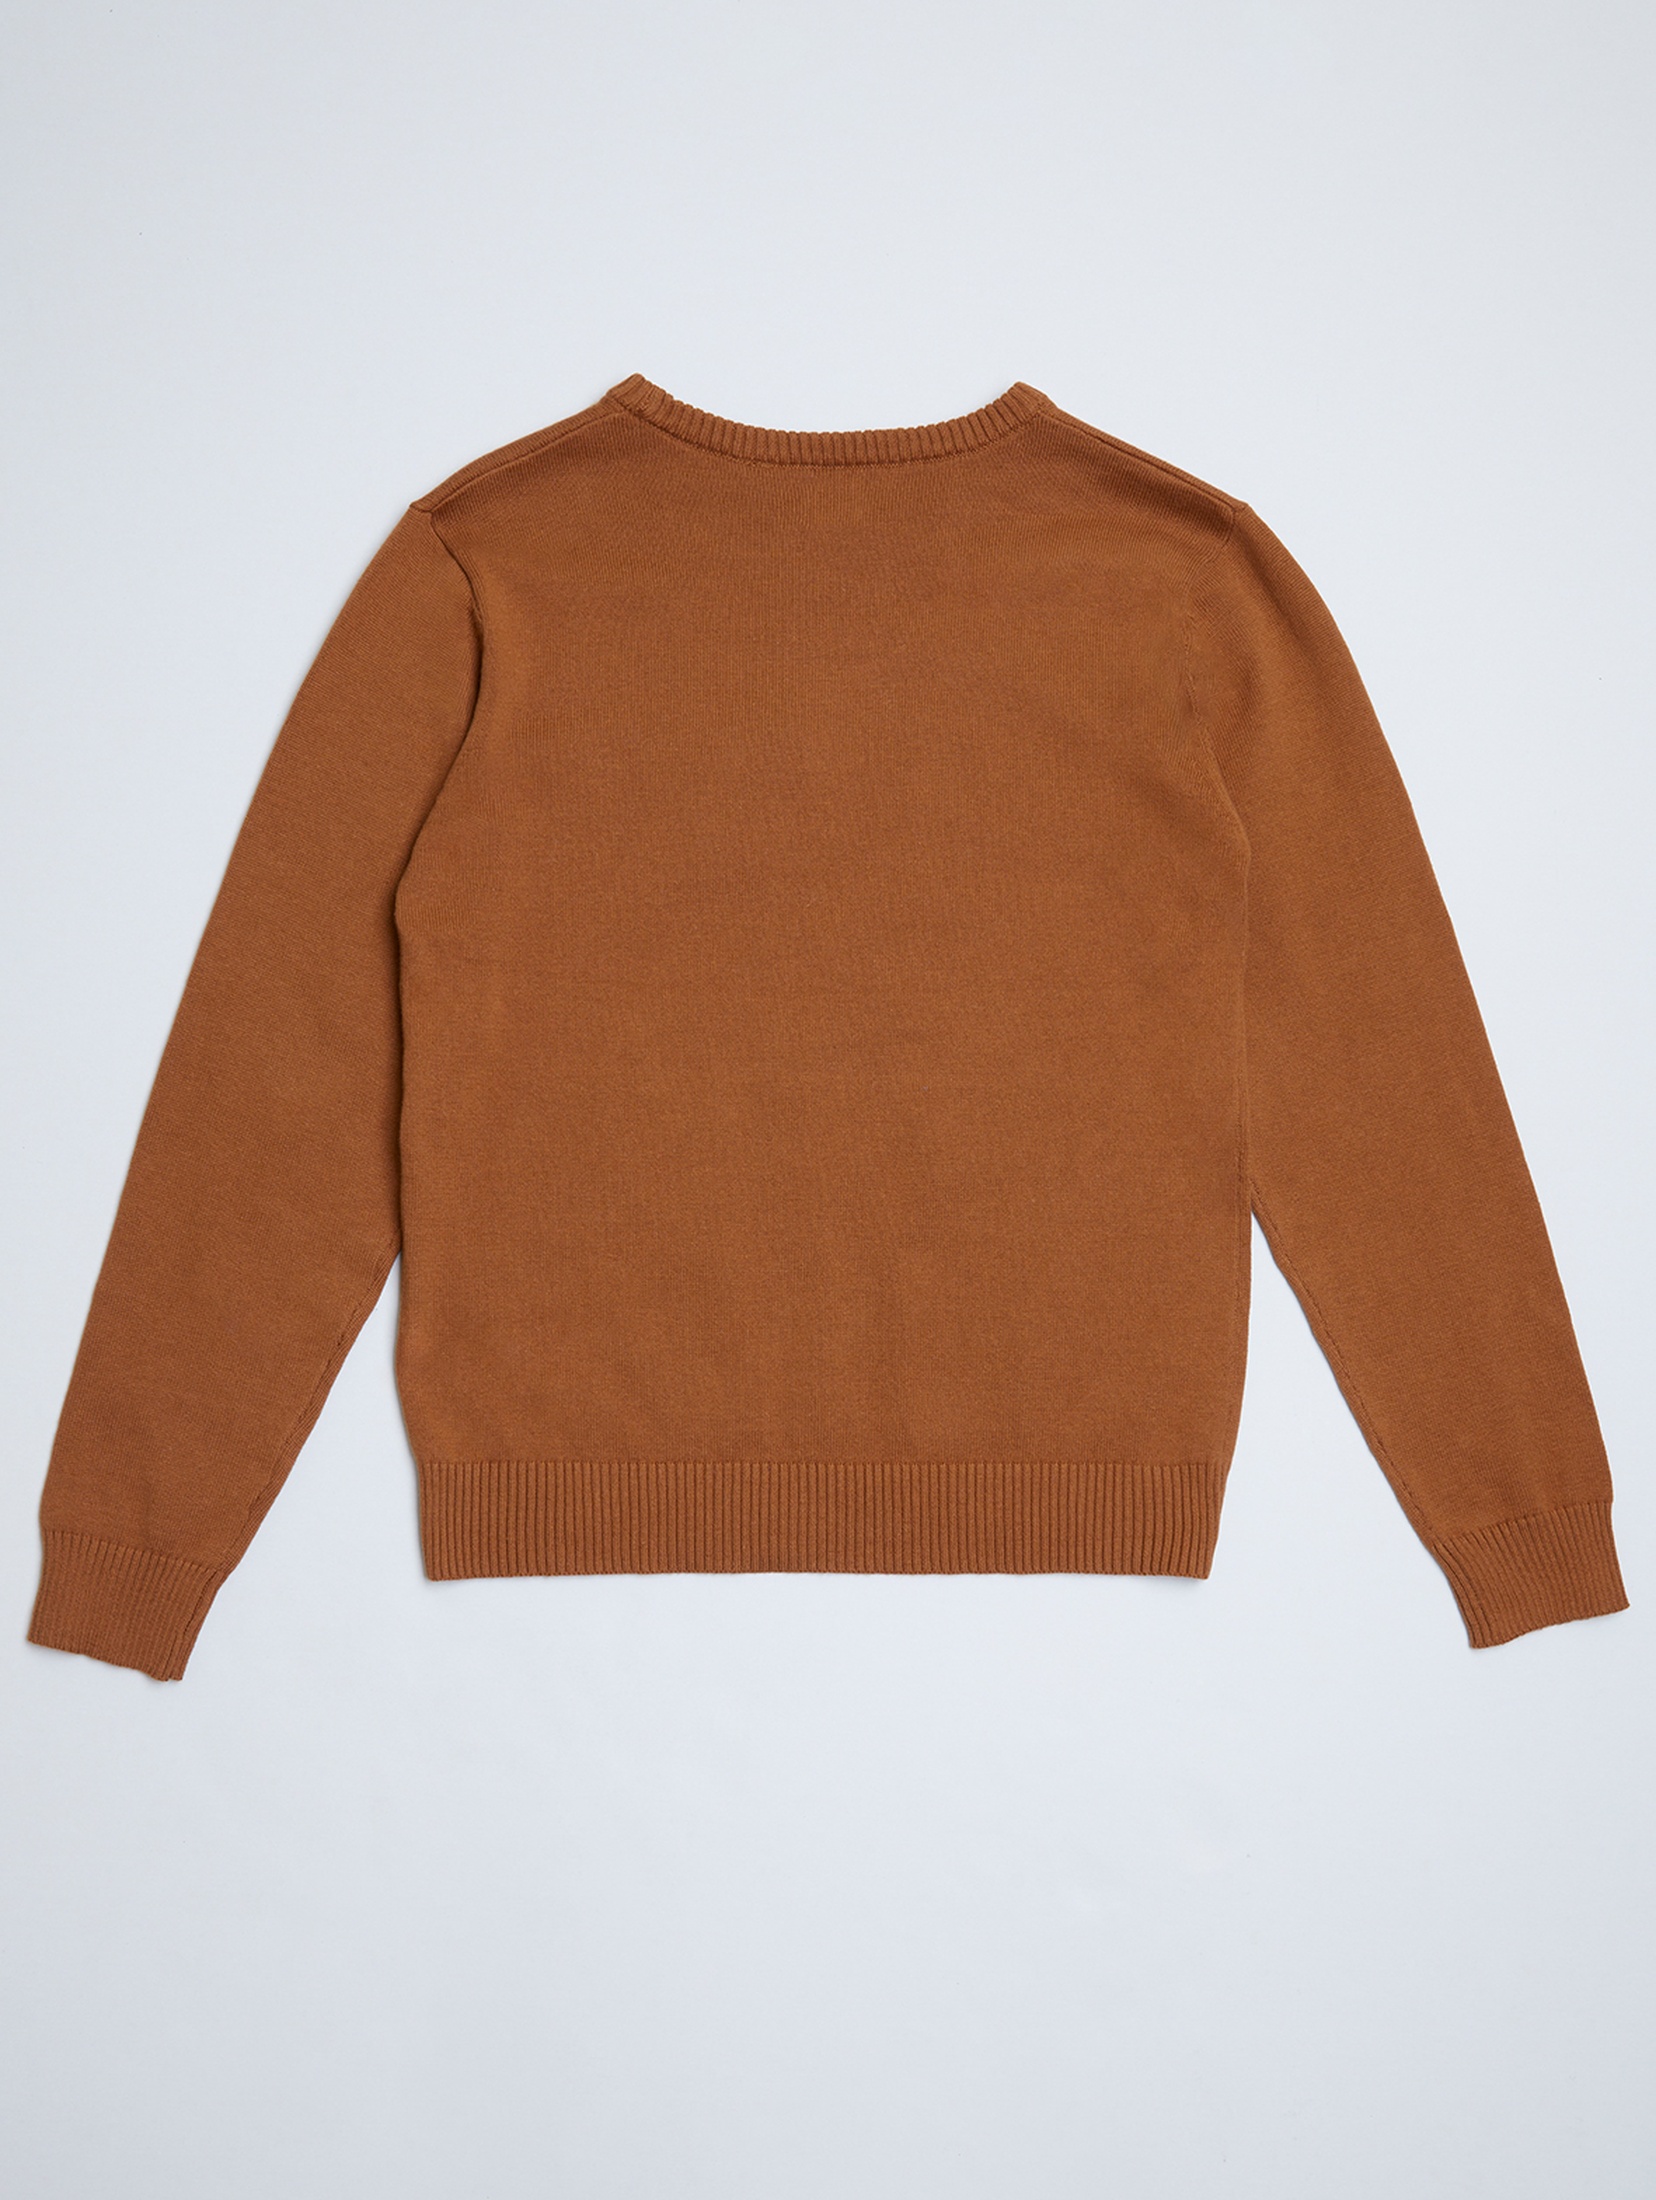 Brązowy sweter dla dziecka - unisex - Limited Edition